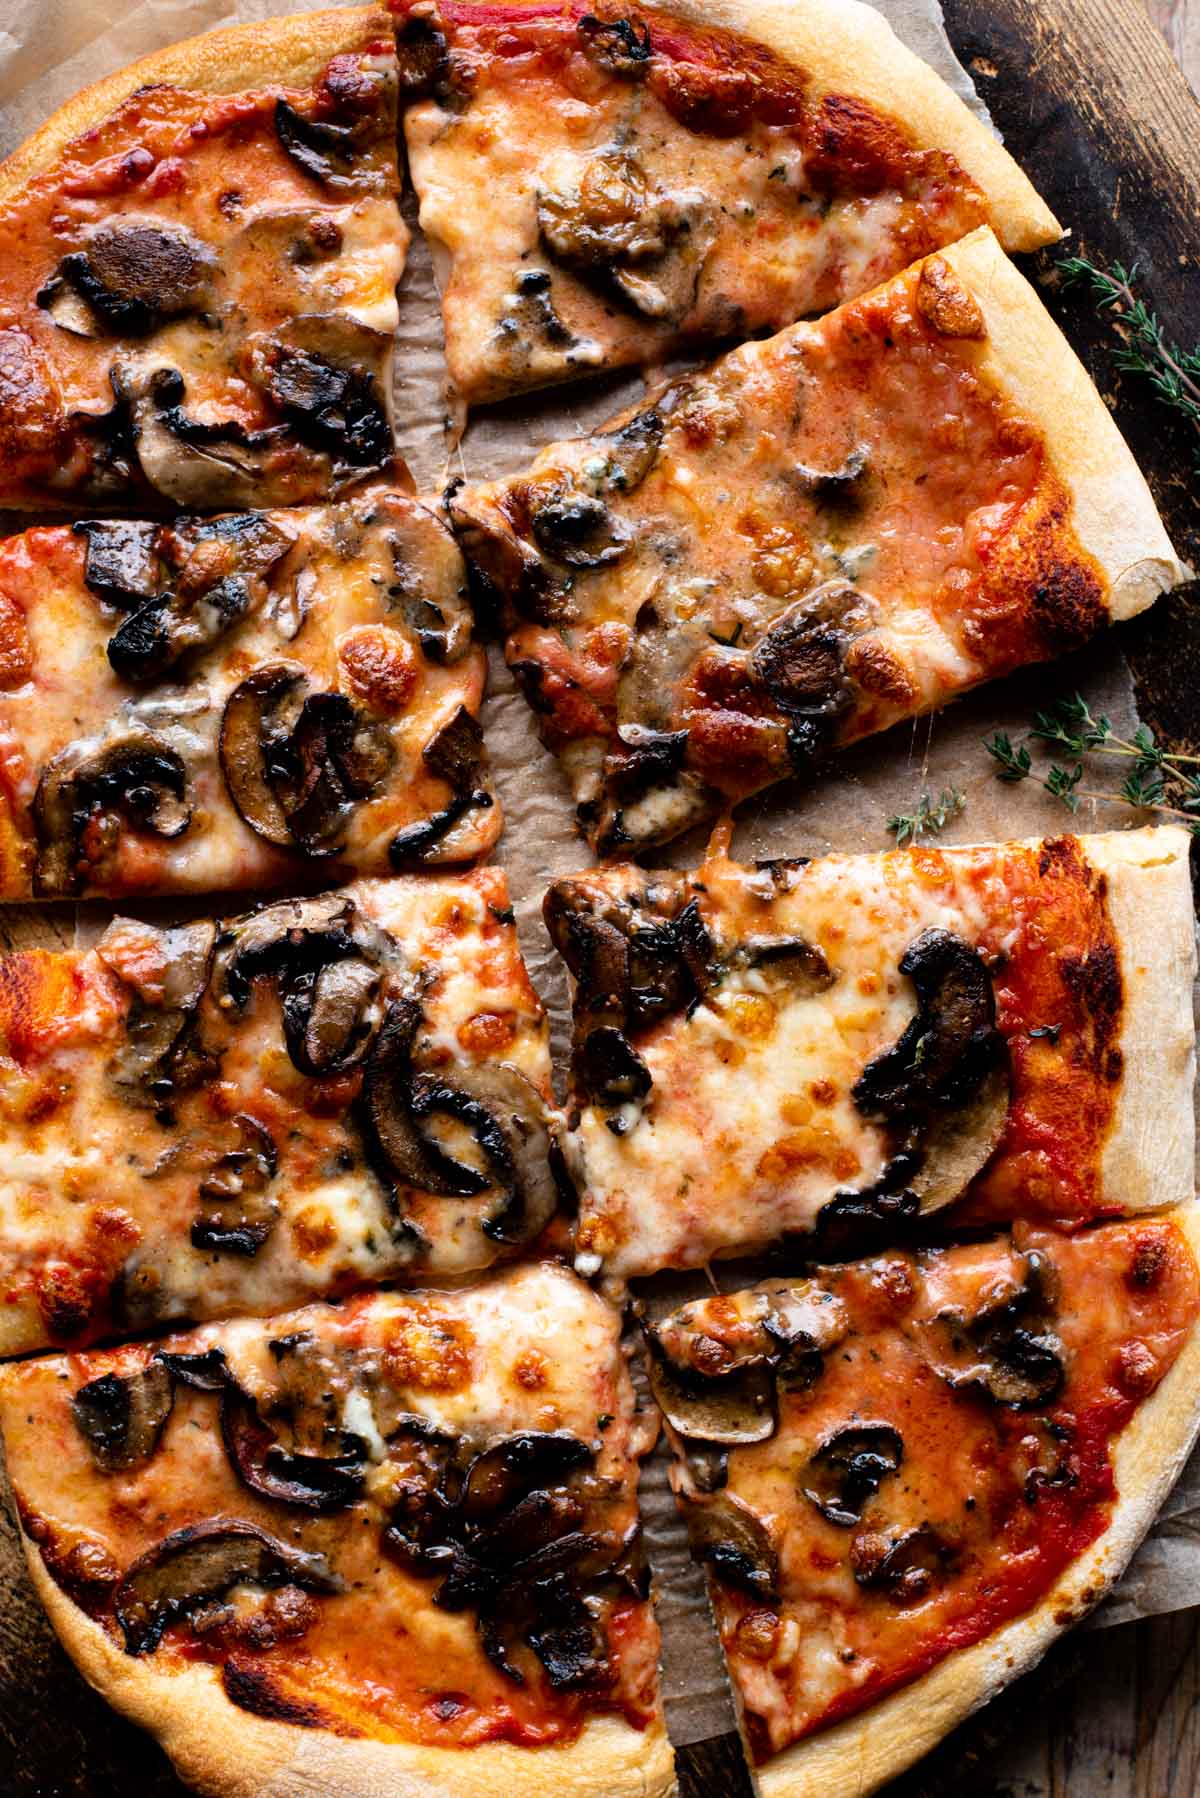 Fotografía cenital de una pizza de champiñones y taleggio cortada en 8 porciones.